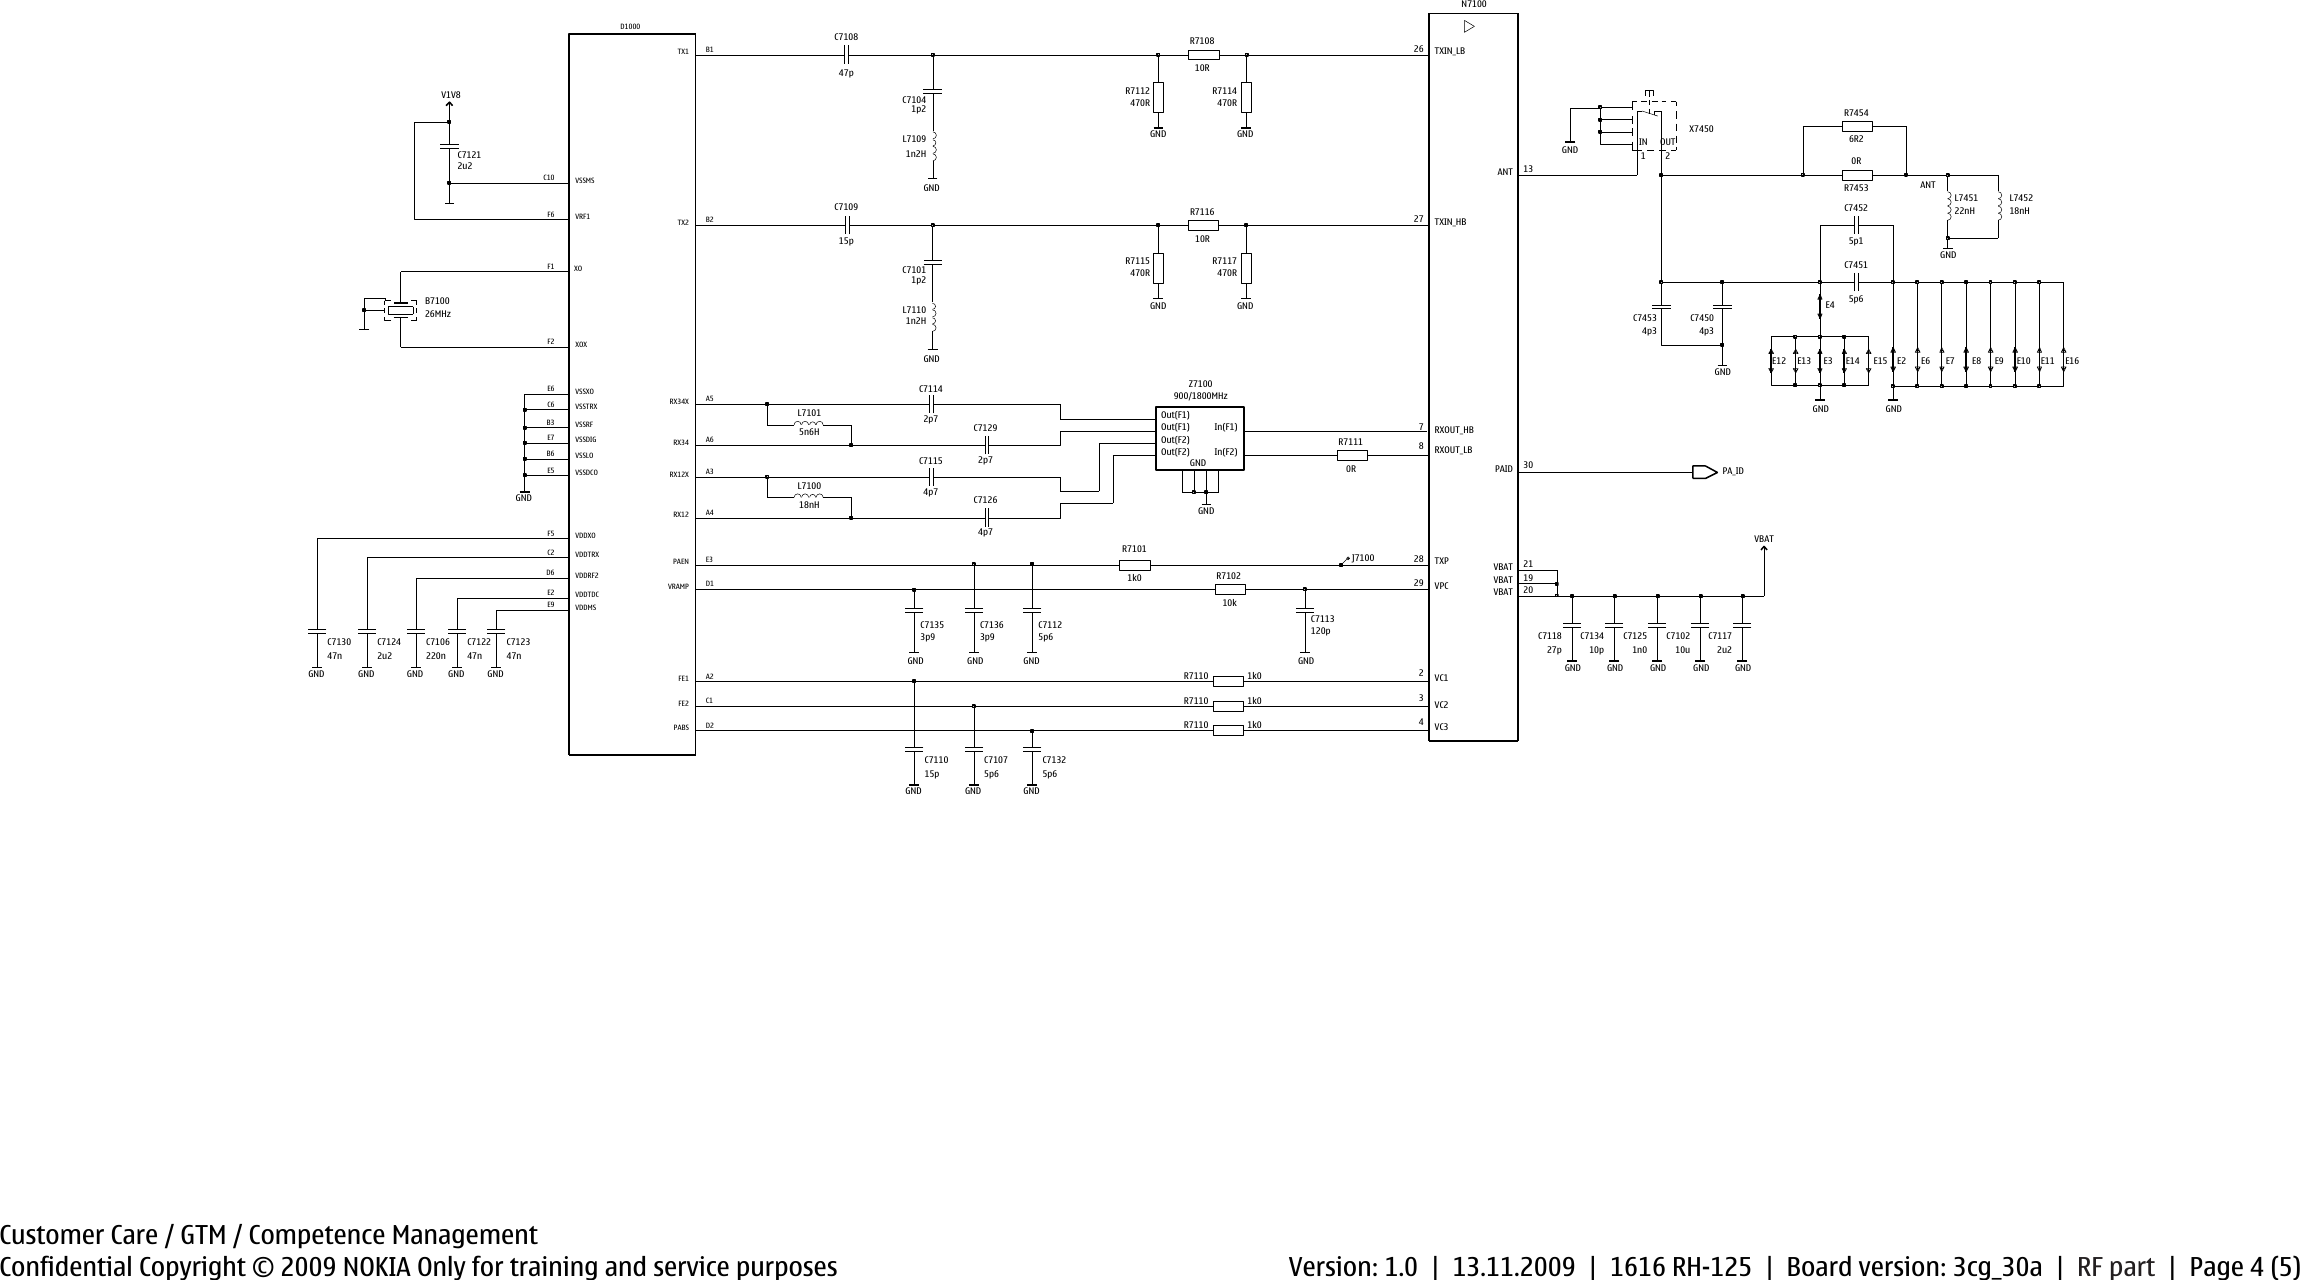 Page 4 of 6 - Nokia 1616 RH-125 - Service Schematics. Www.s-manuals.com. Schematics V1.0